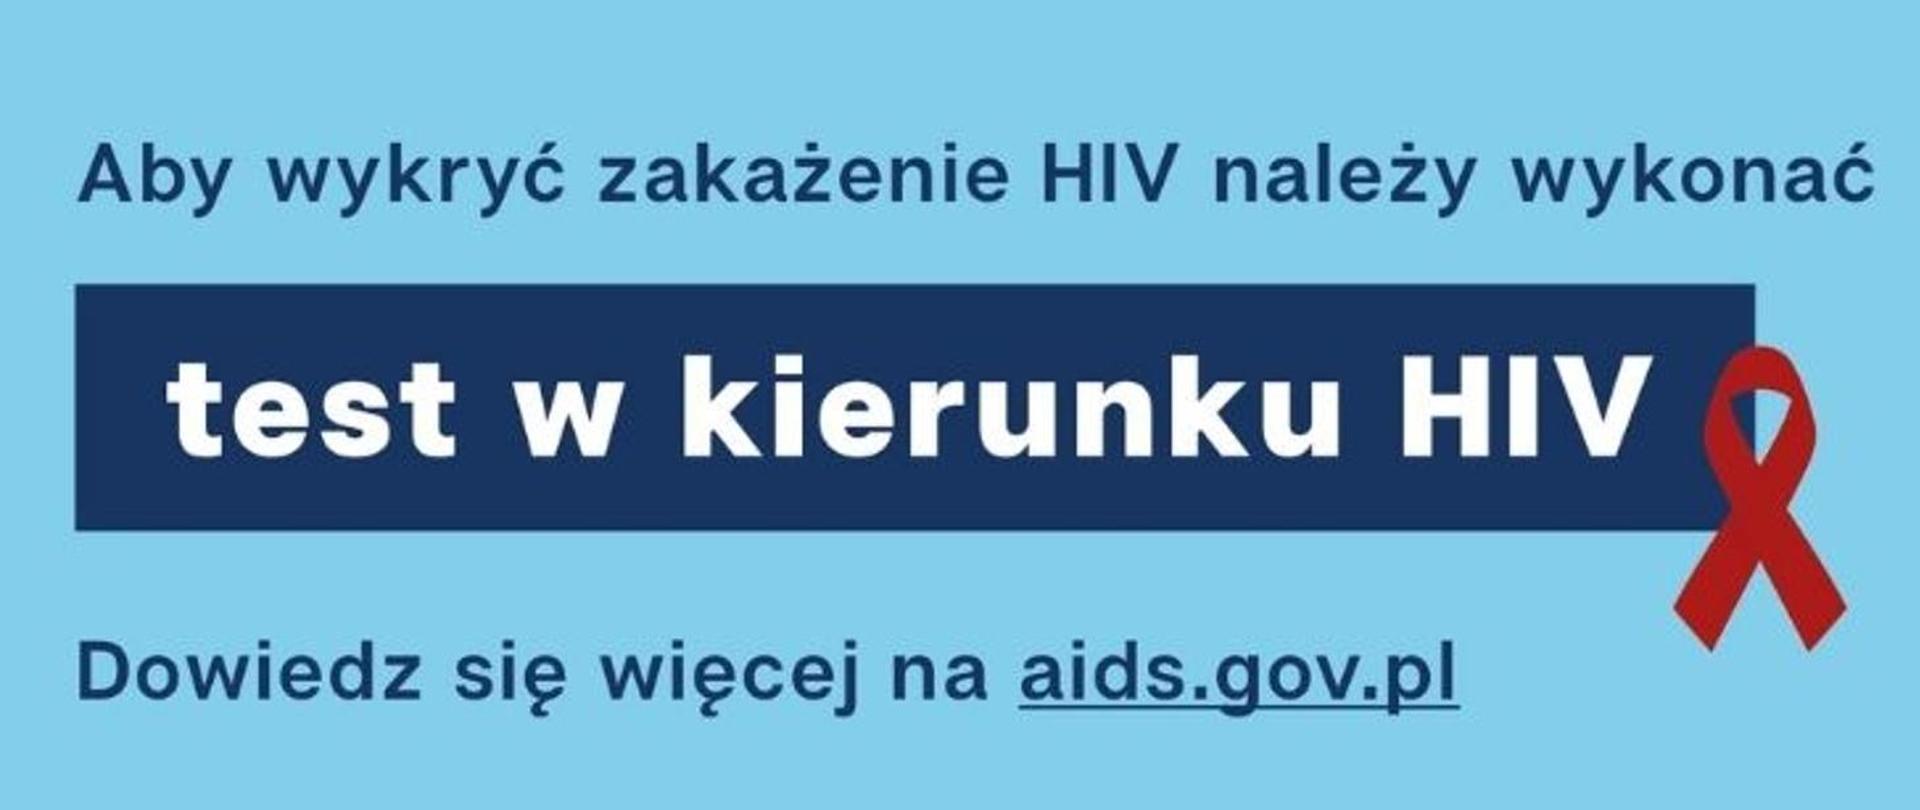 Aby wykryć zakażenie HIV należy wykonać test w kierunku HIV. Dowiedz się więcej na aids.gov.pl. Czerwona wstążeczka